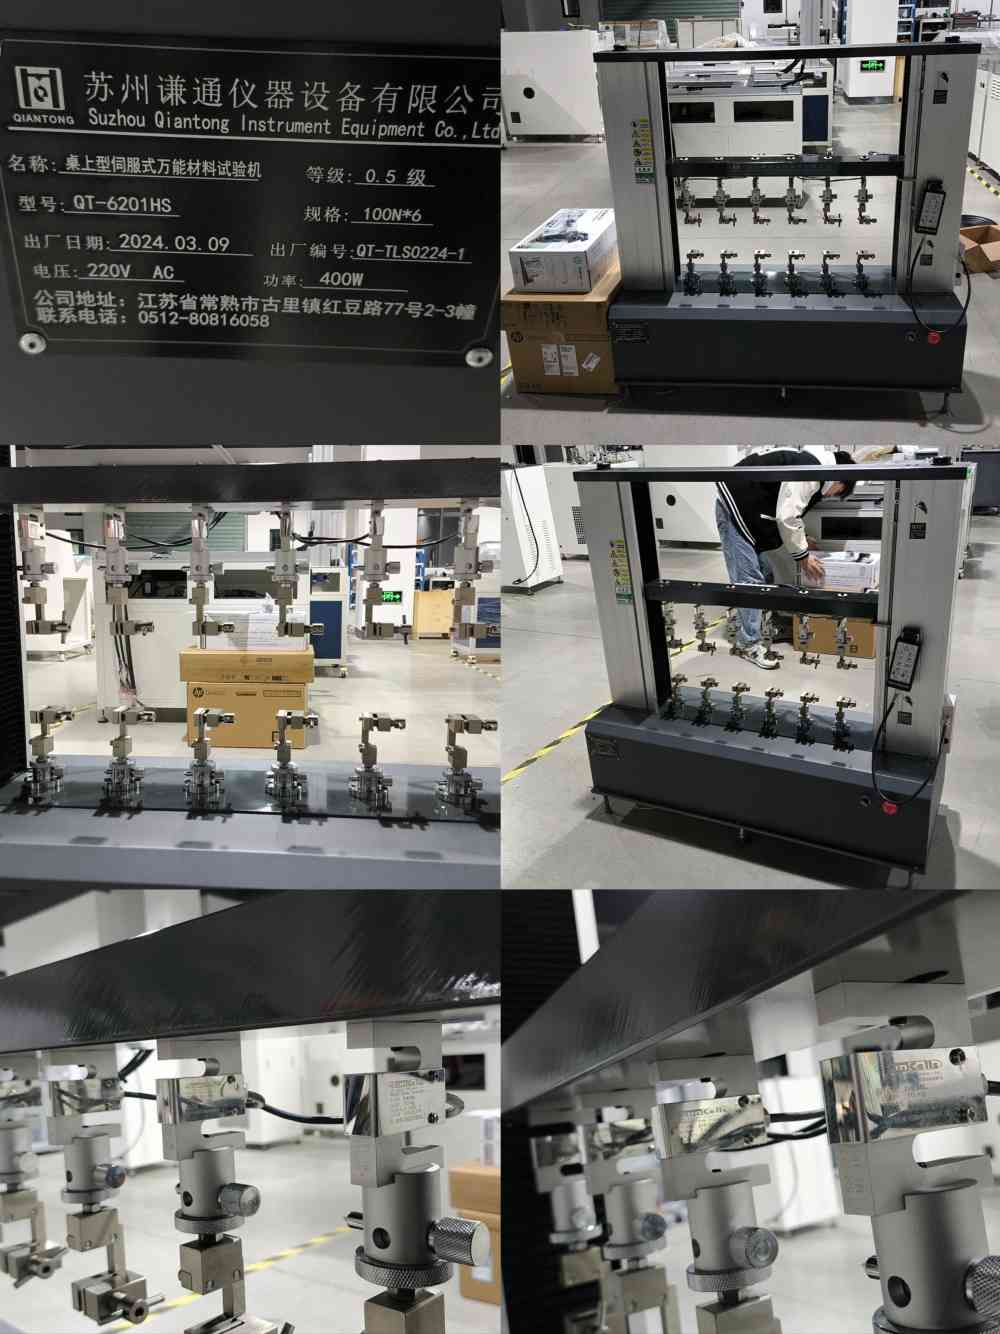 2024.3.9 Die Tisch-Servo-Universal-Materialprüfmaschine QT-6201HS wurde fertiggestellt und geliefert